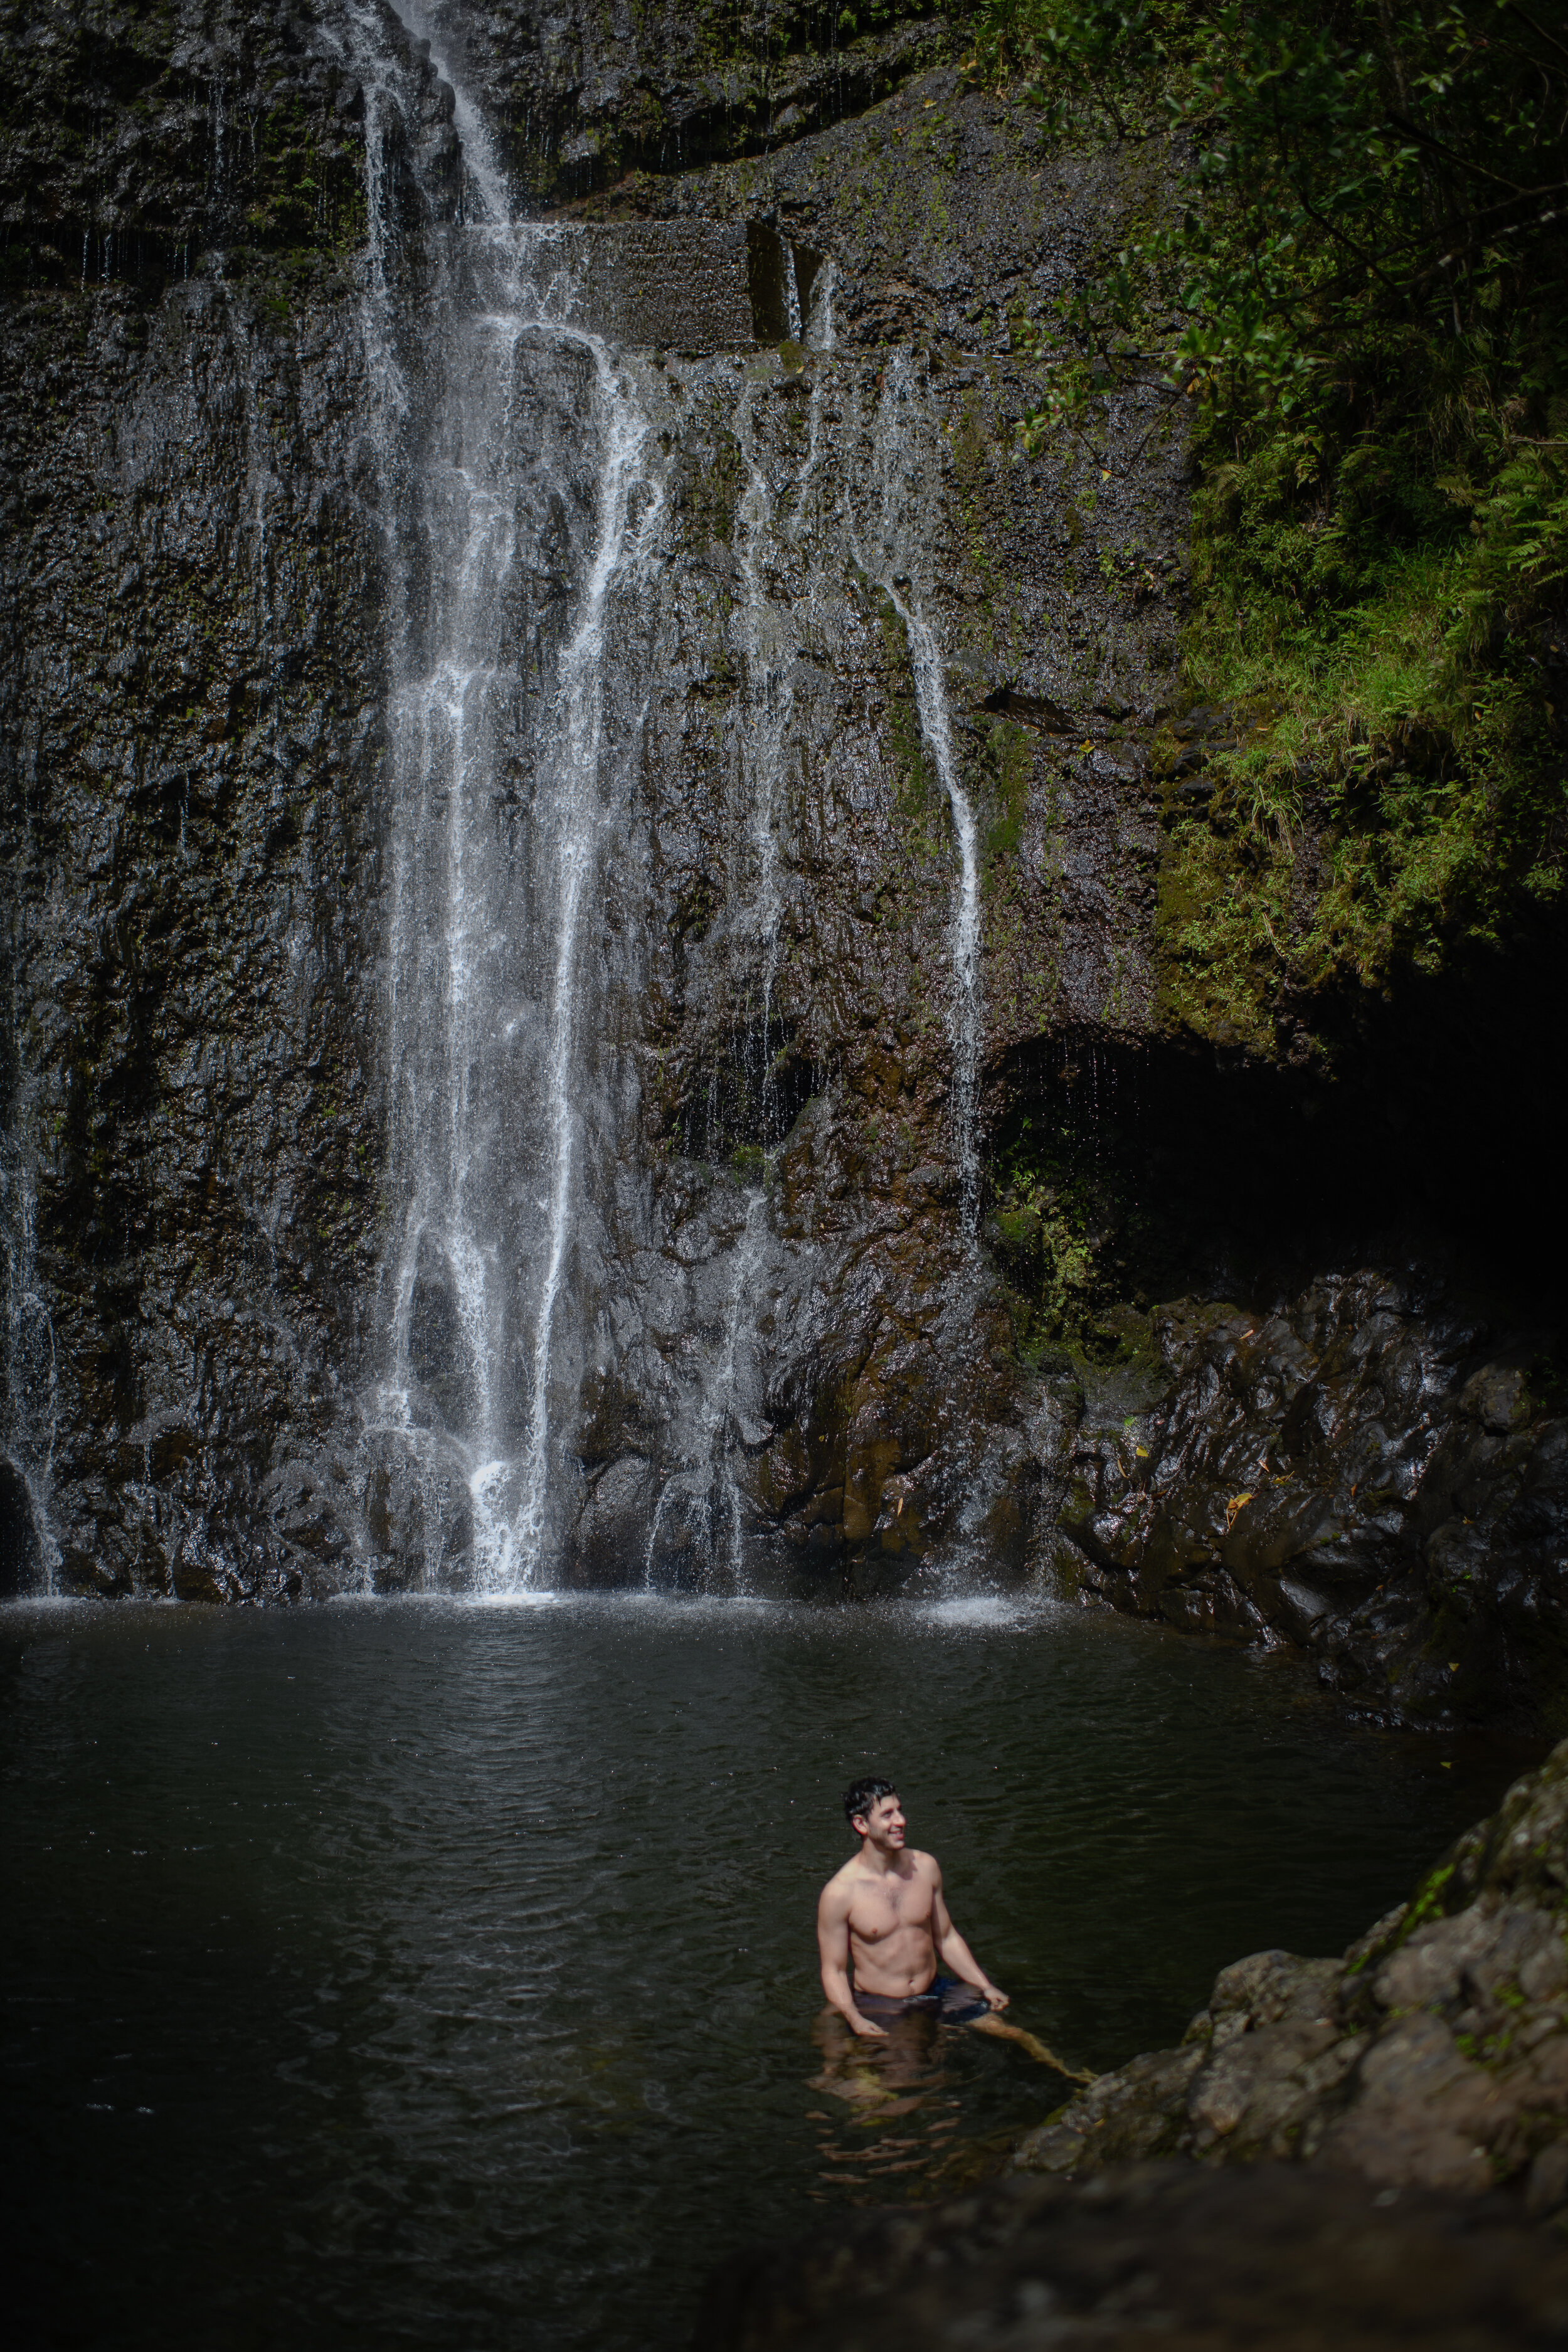 Man Swimming at Waterfall, 2021